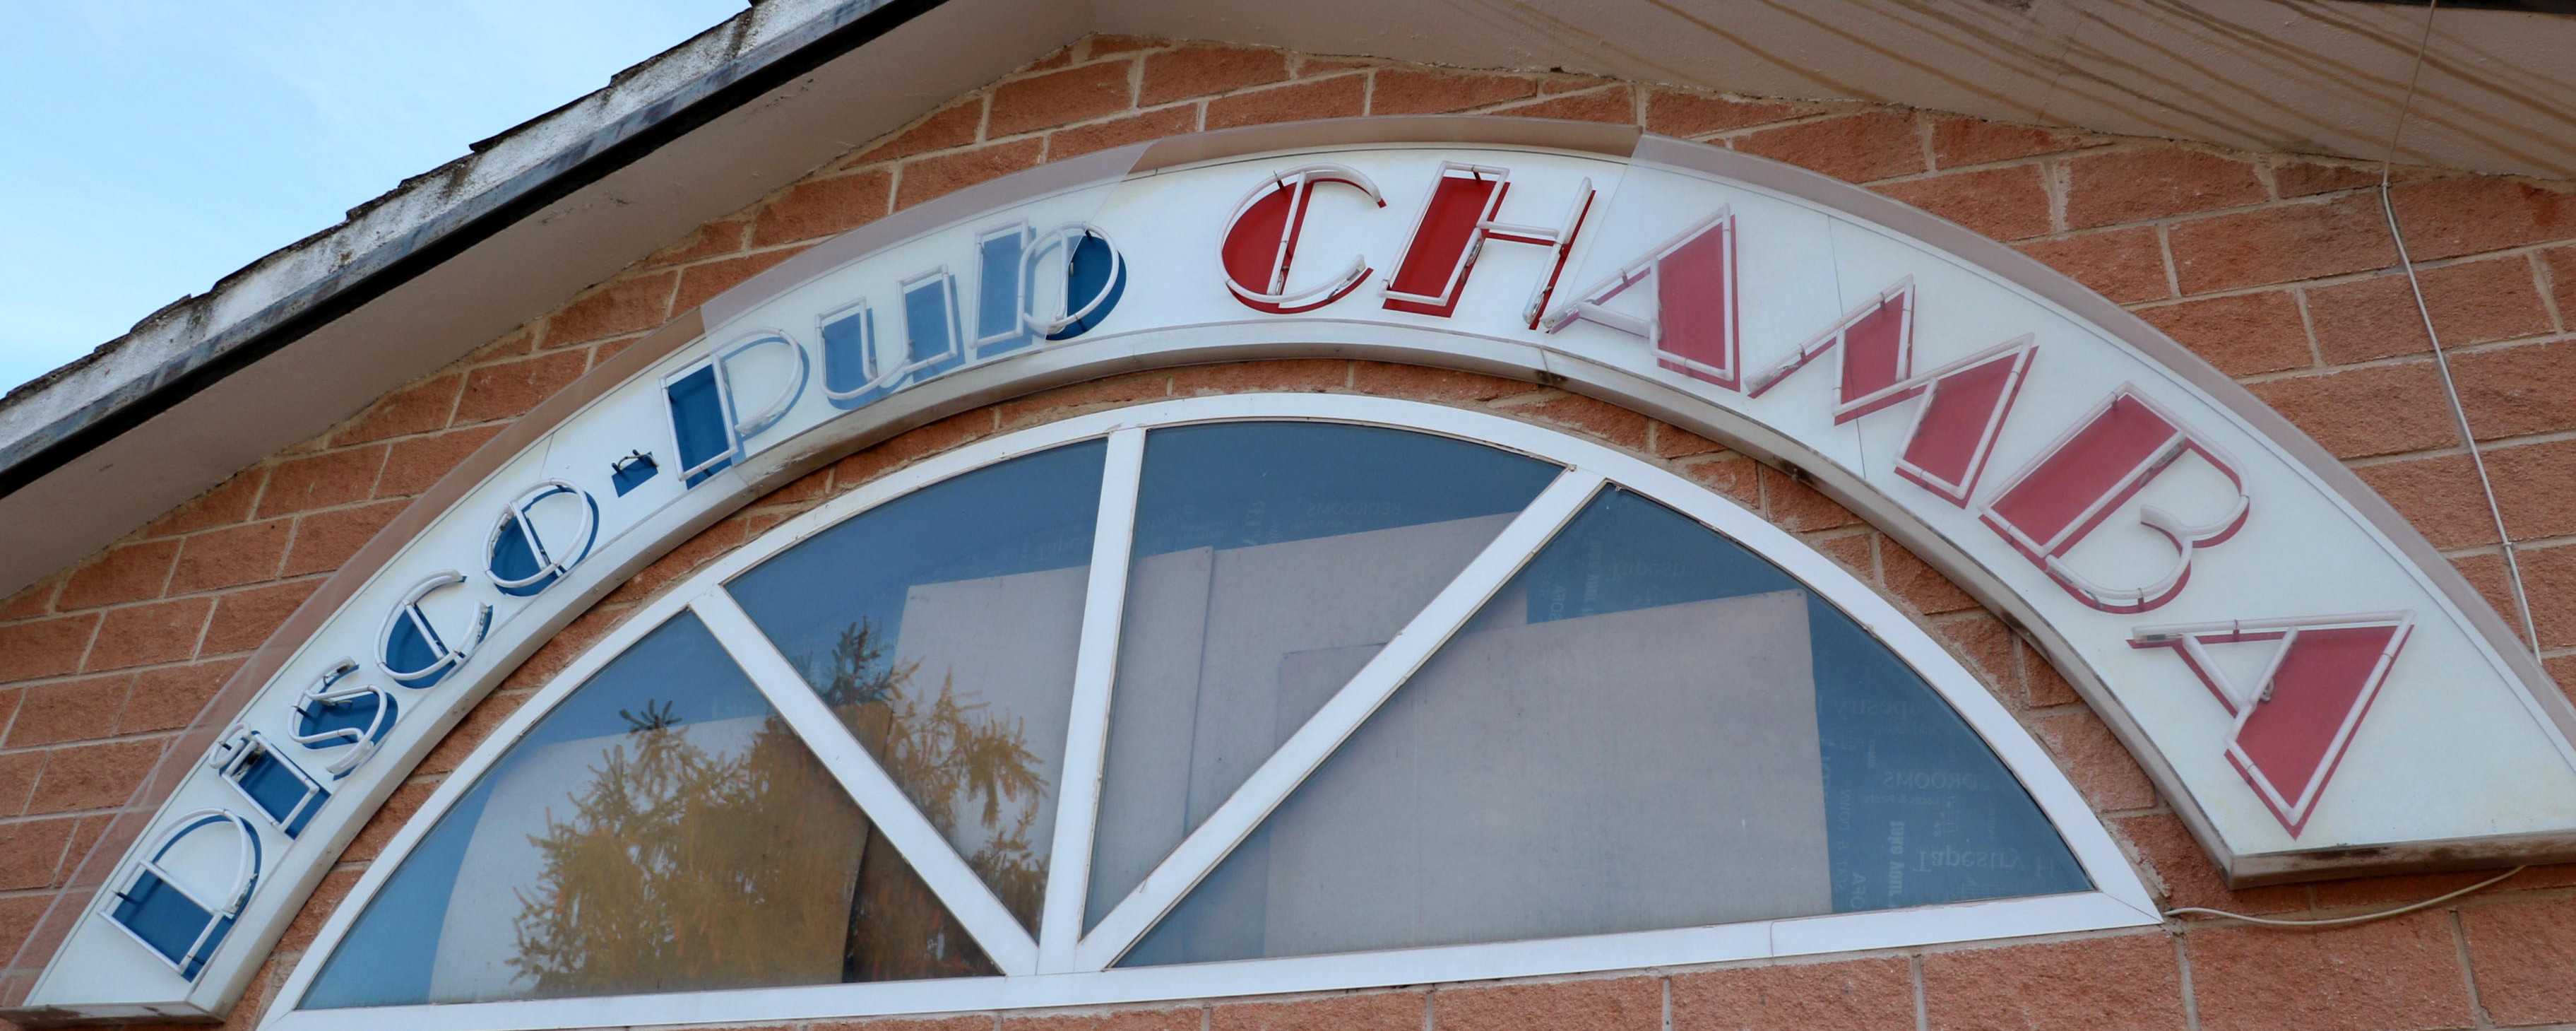 Pub Chamba, evolucionando el ocio de Almonacid desde 1986